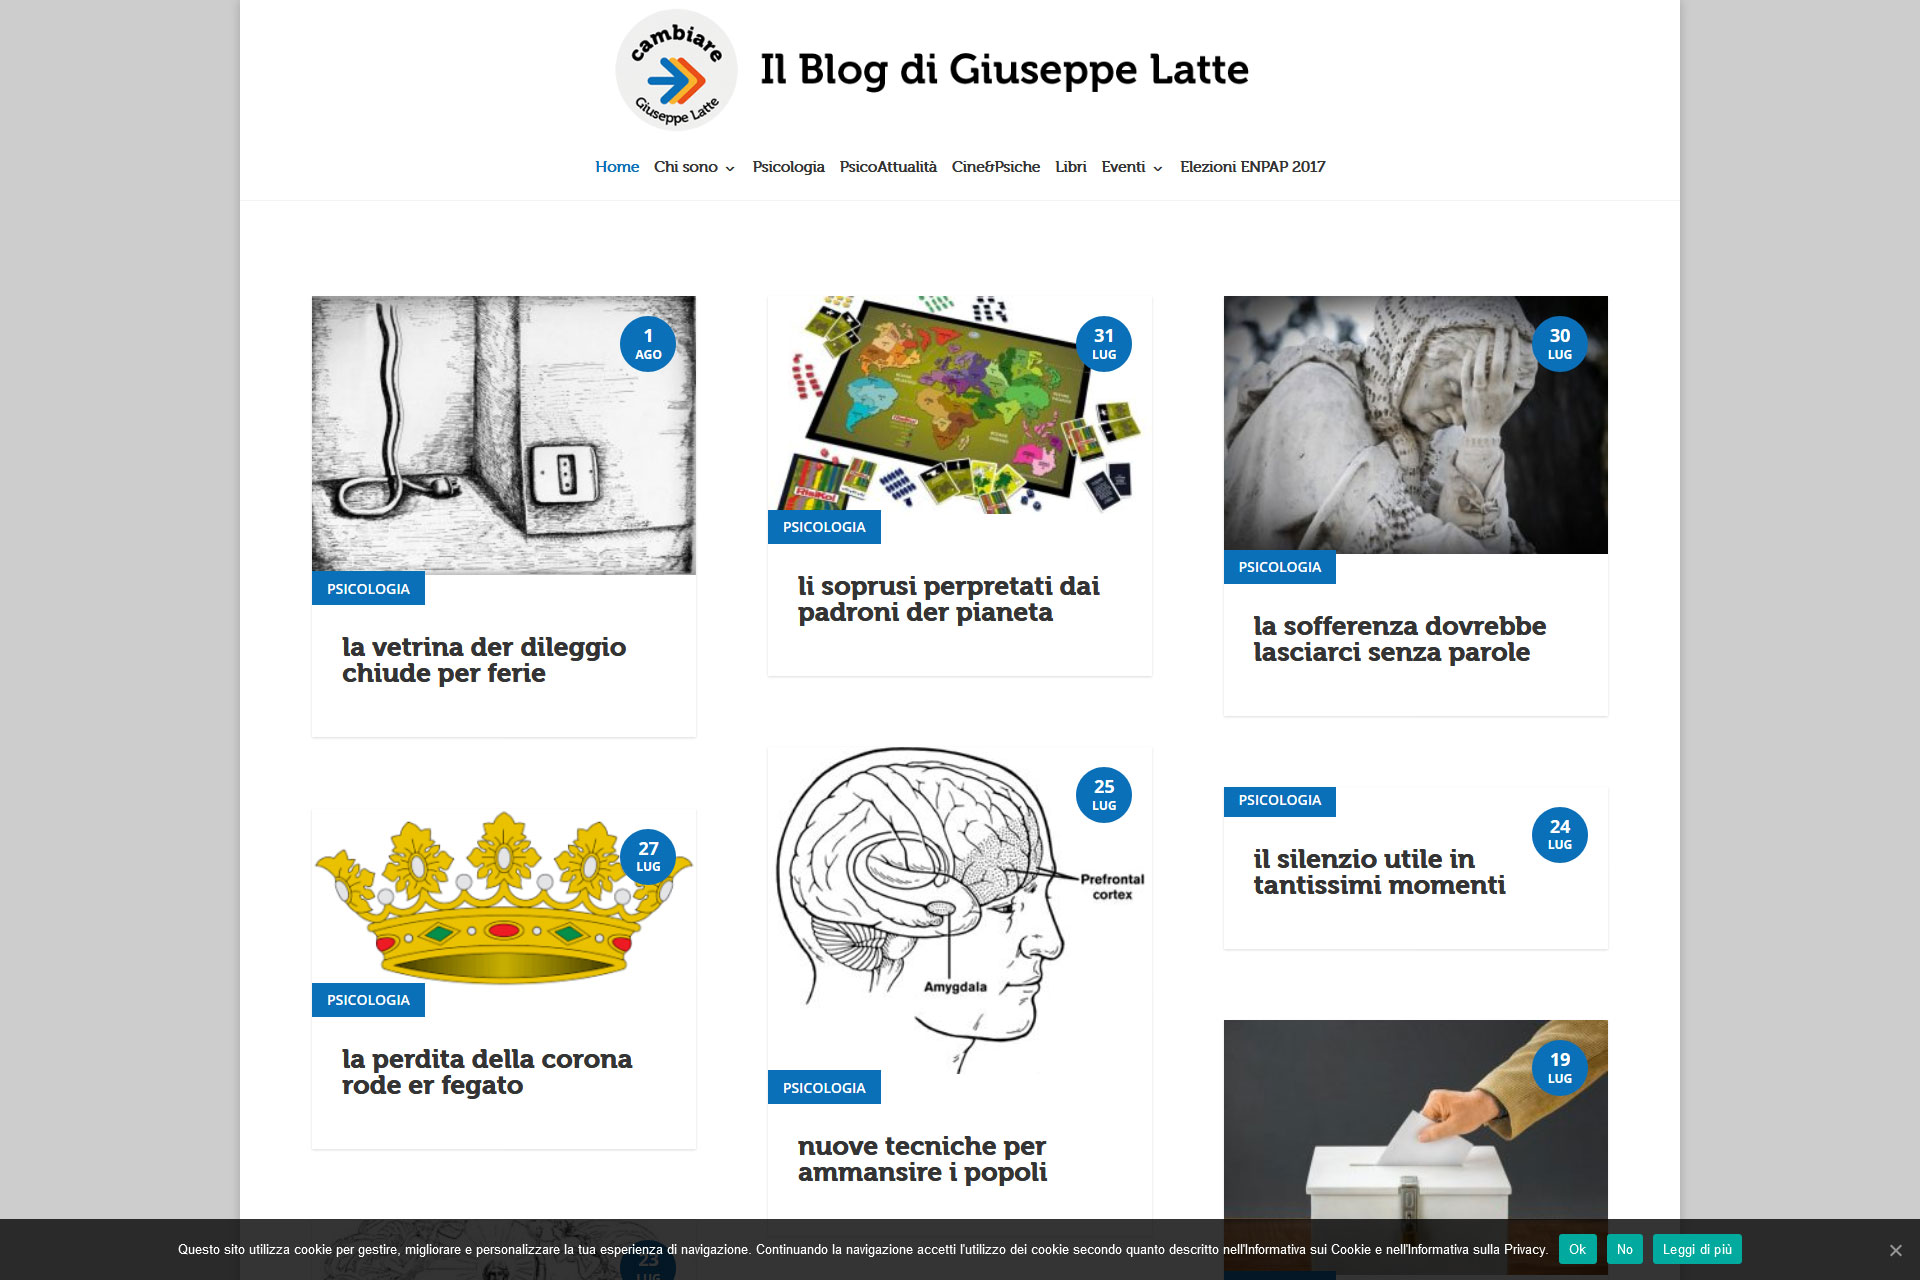 lv-design-realizzazione-siti-web-bologna-portfolio-giuseppe-latte-slide-1